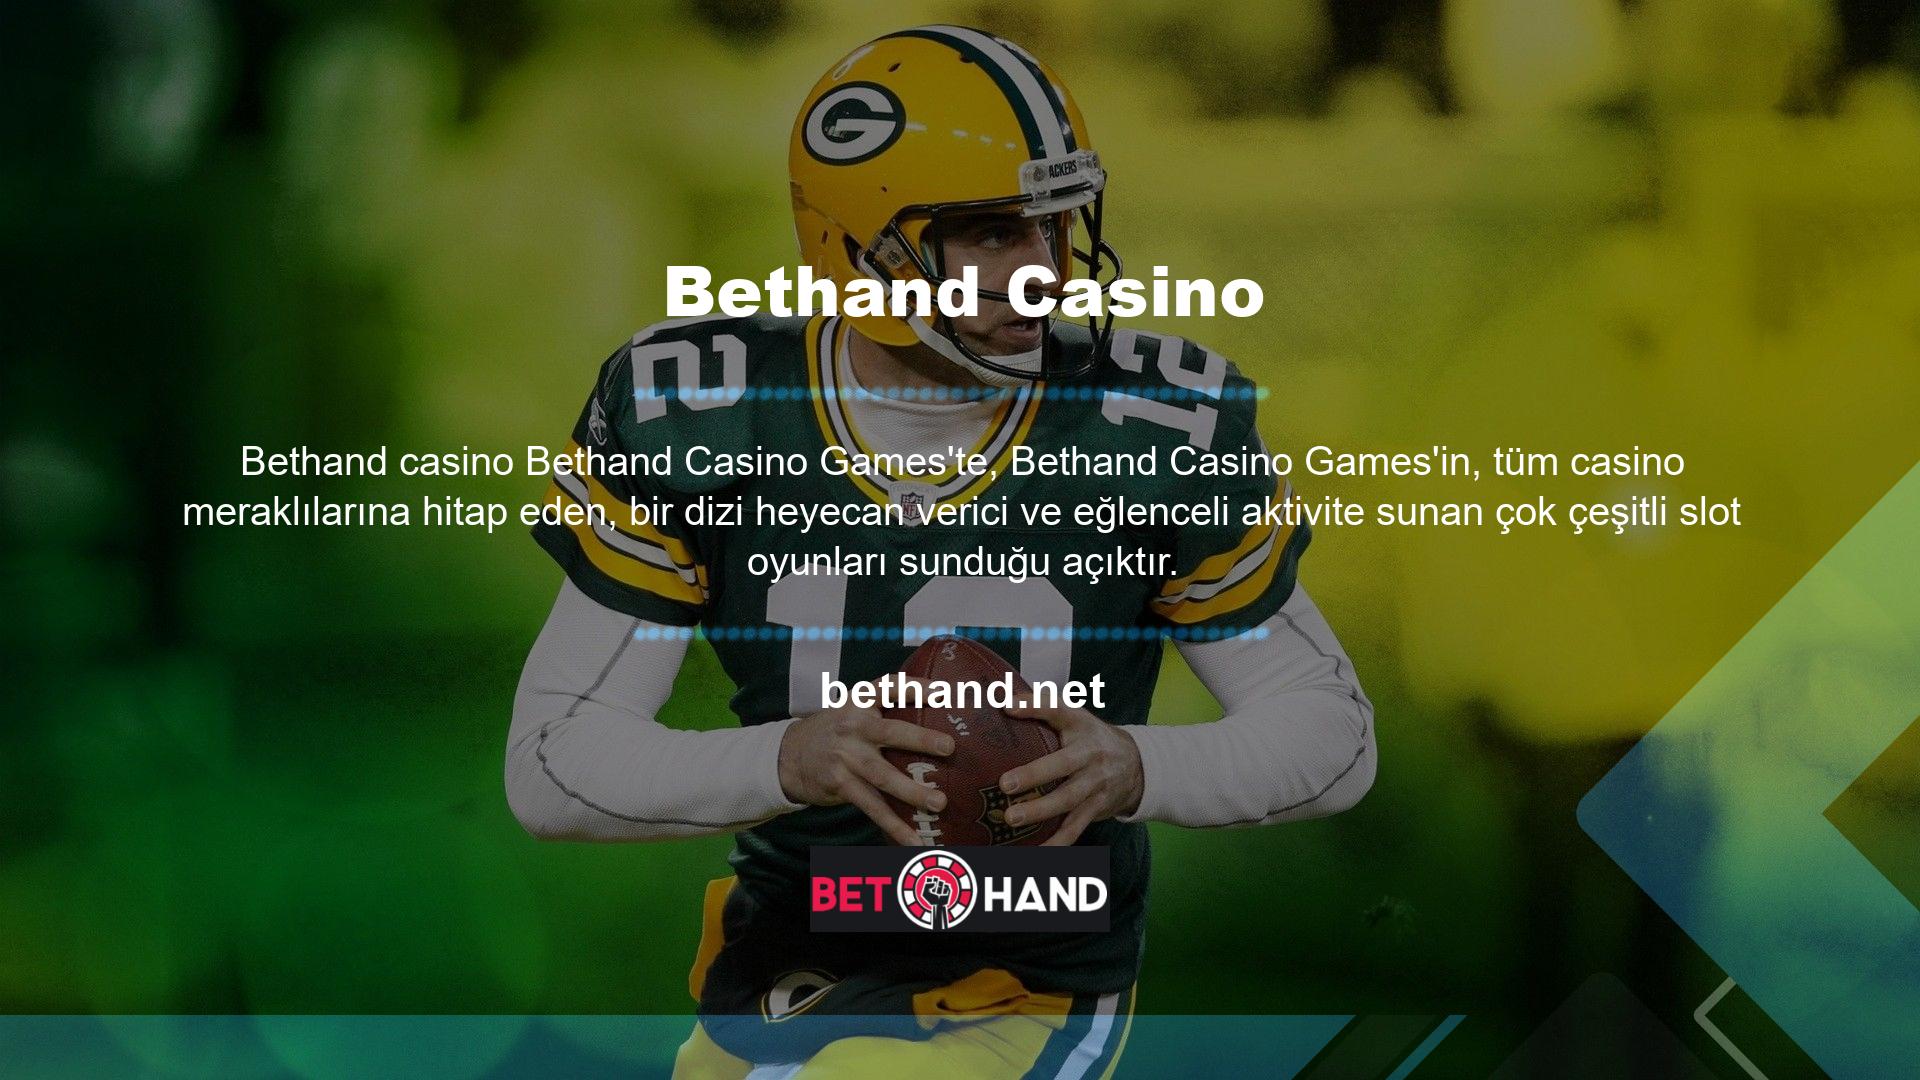 Sitede Bethand Lucky 7 oyununun yanı sıra 3 boyutlu slot makineleri, zar oyunları, slot makinesi ve jackpotlar da bulunmaktadır